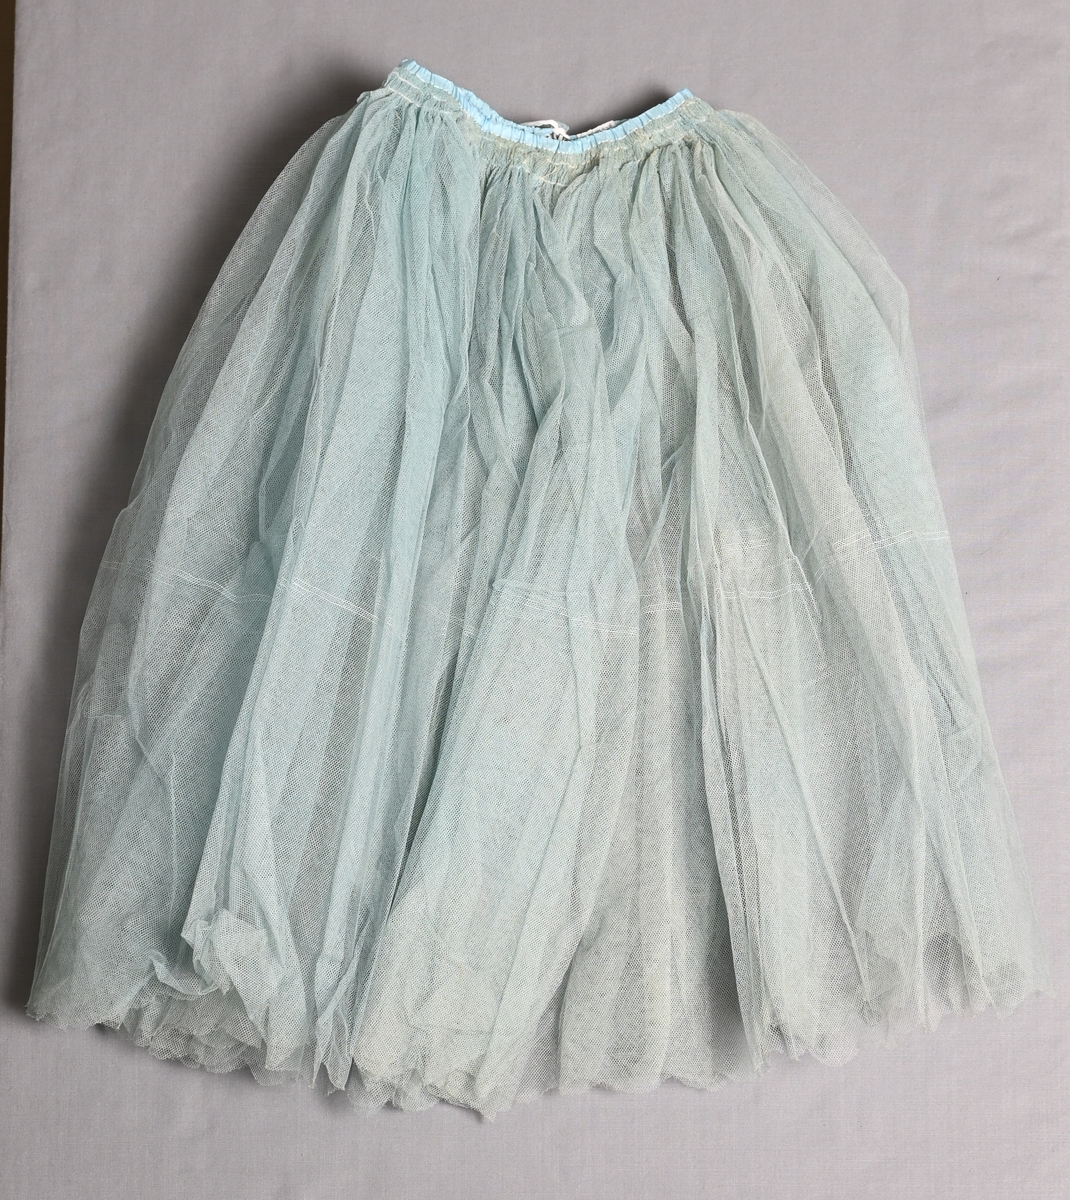 Mycket vid kjol av ljusblå bomullstyll. Knäpps med hyskor och hakar.